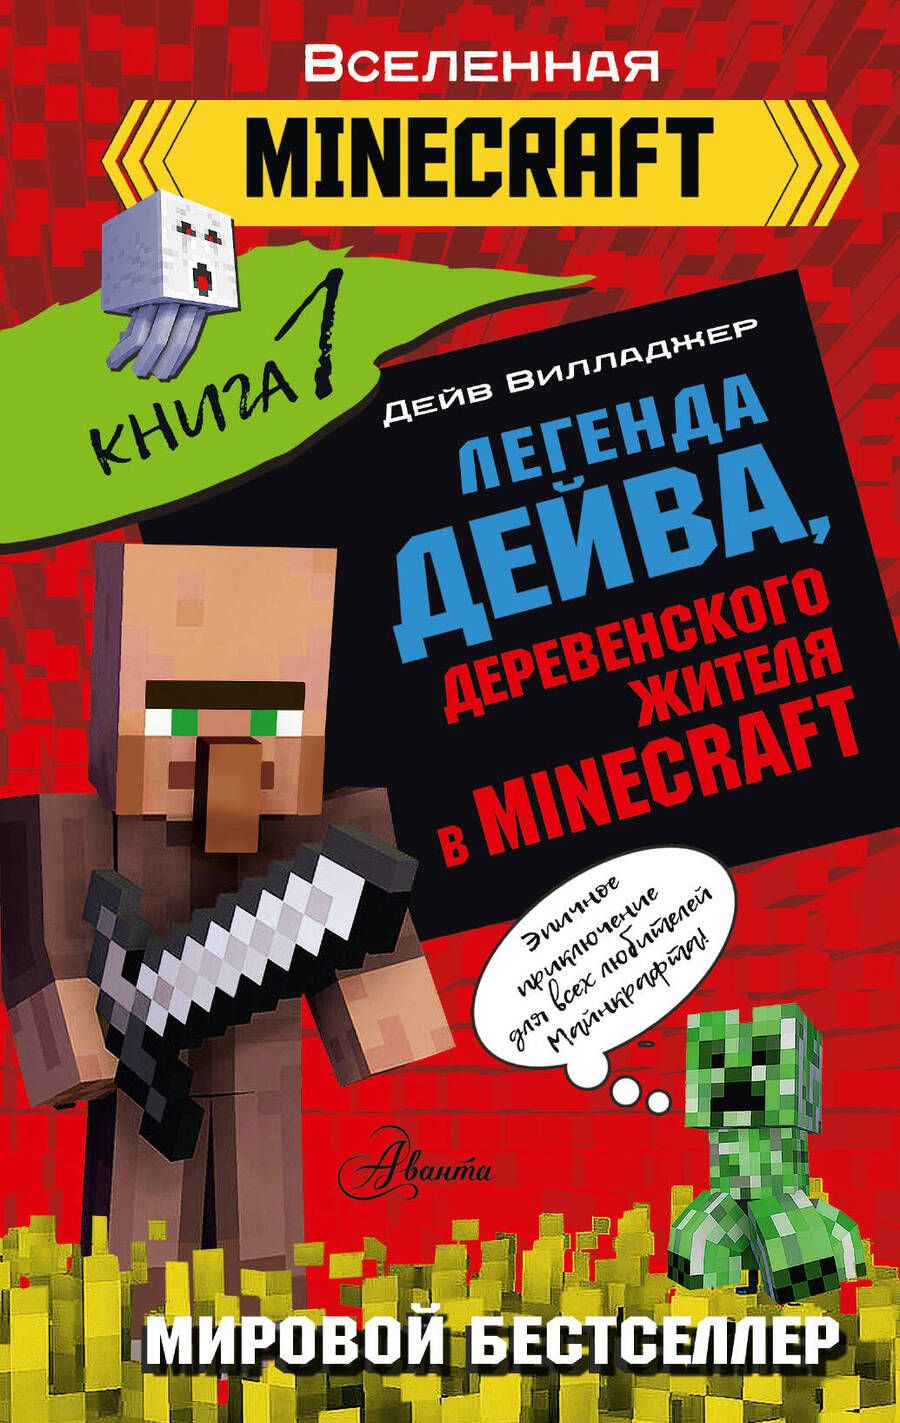 Обложка книги "Вилладжер: Легенда Дейва, деревенского жителя в Minecraft. Книга 1"